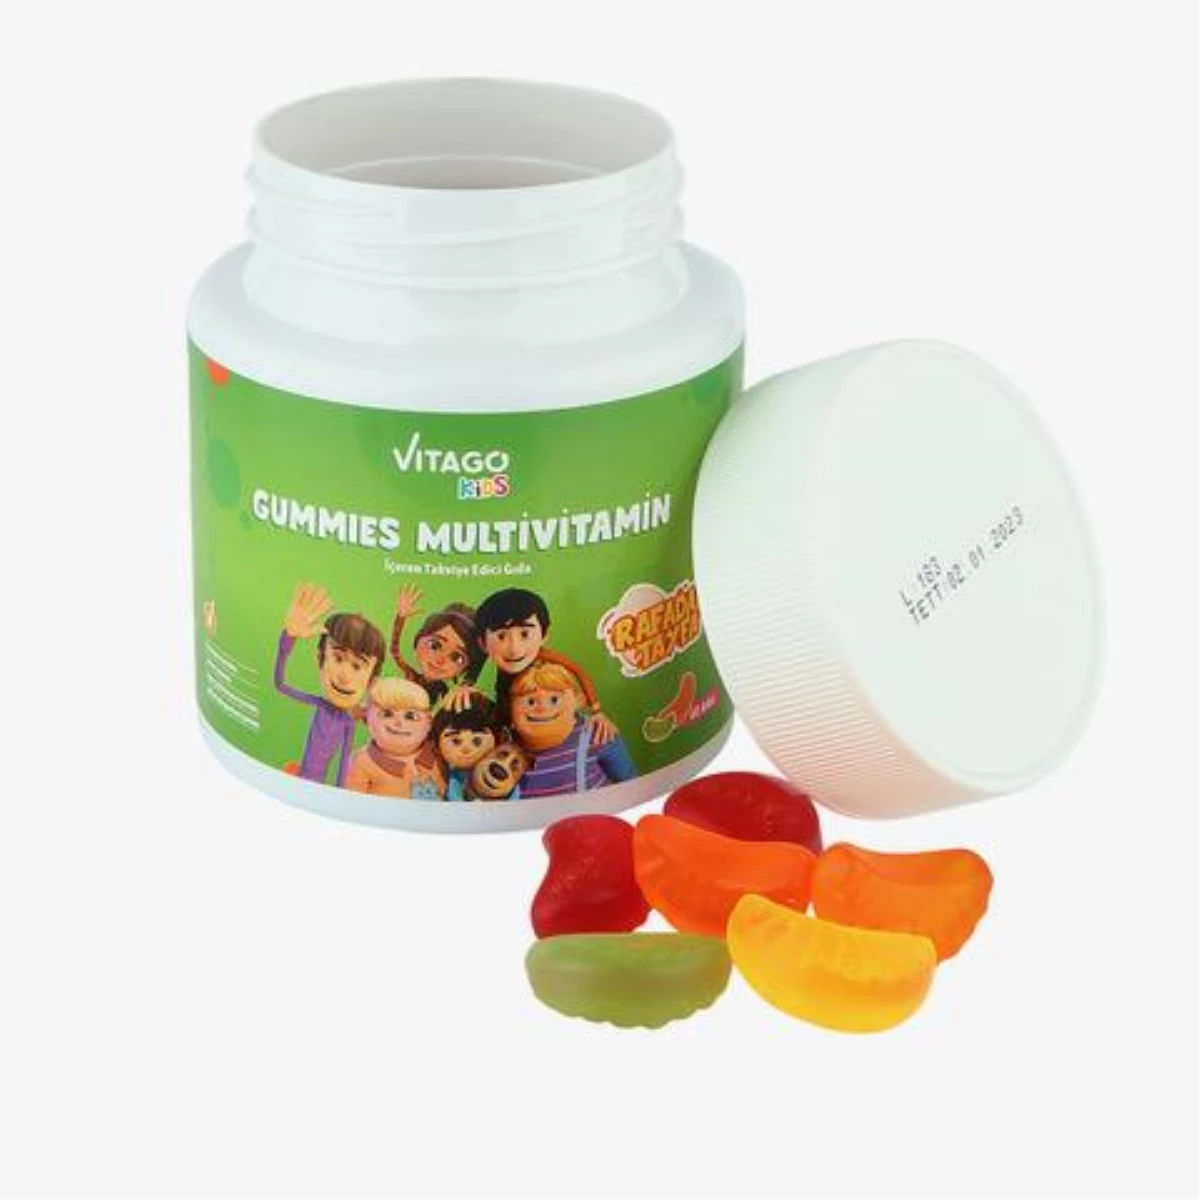 Rafadan Tayfa\'nın arkadaşlık maceraları, Vitago Kids ile vitamin dünyasına taşınıyor